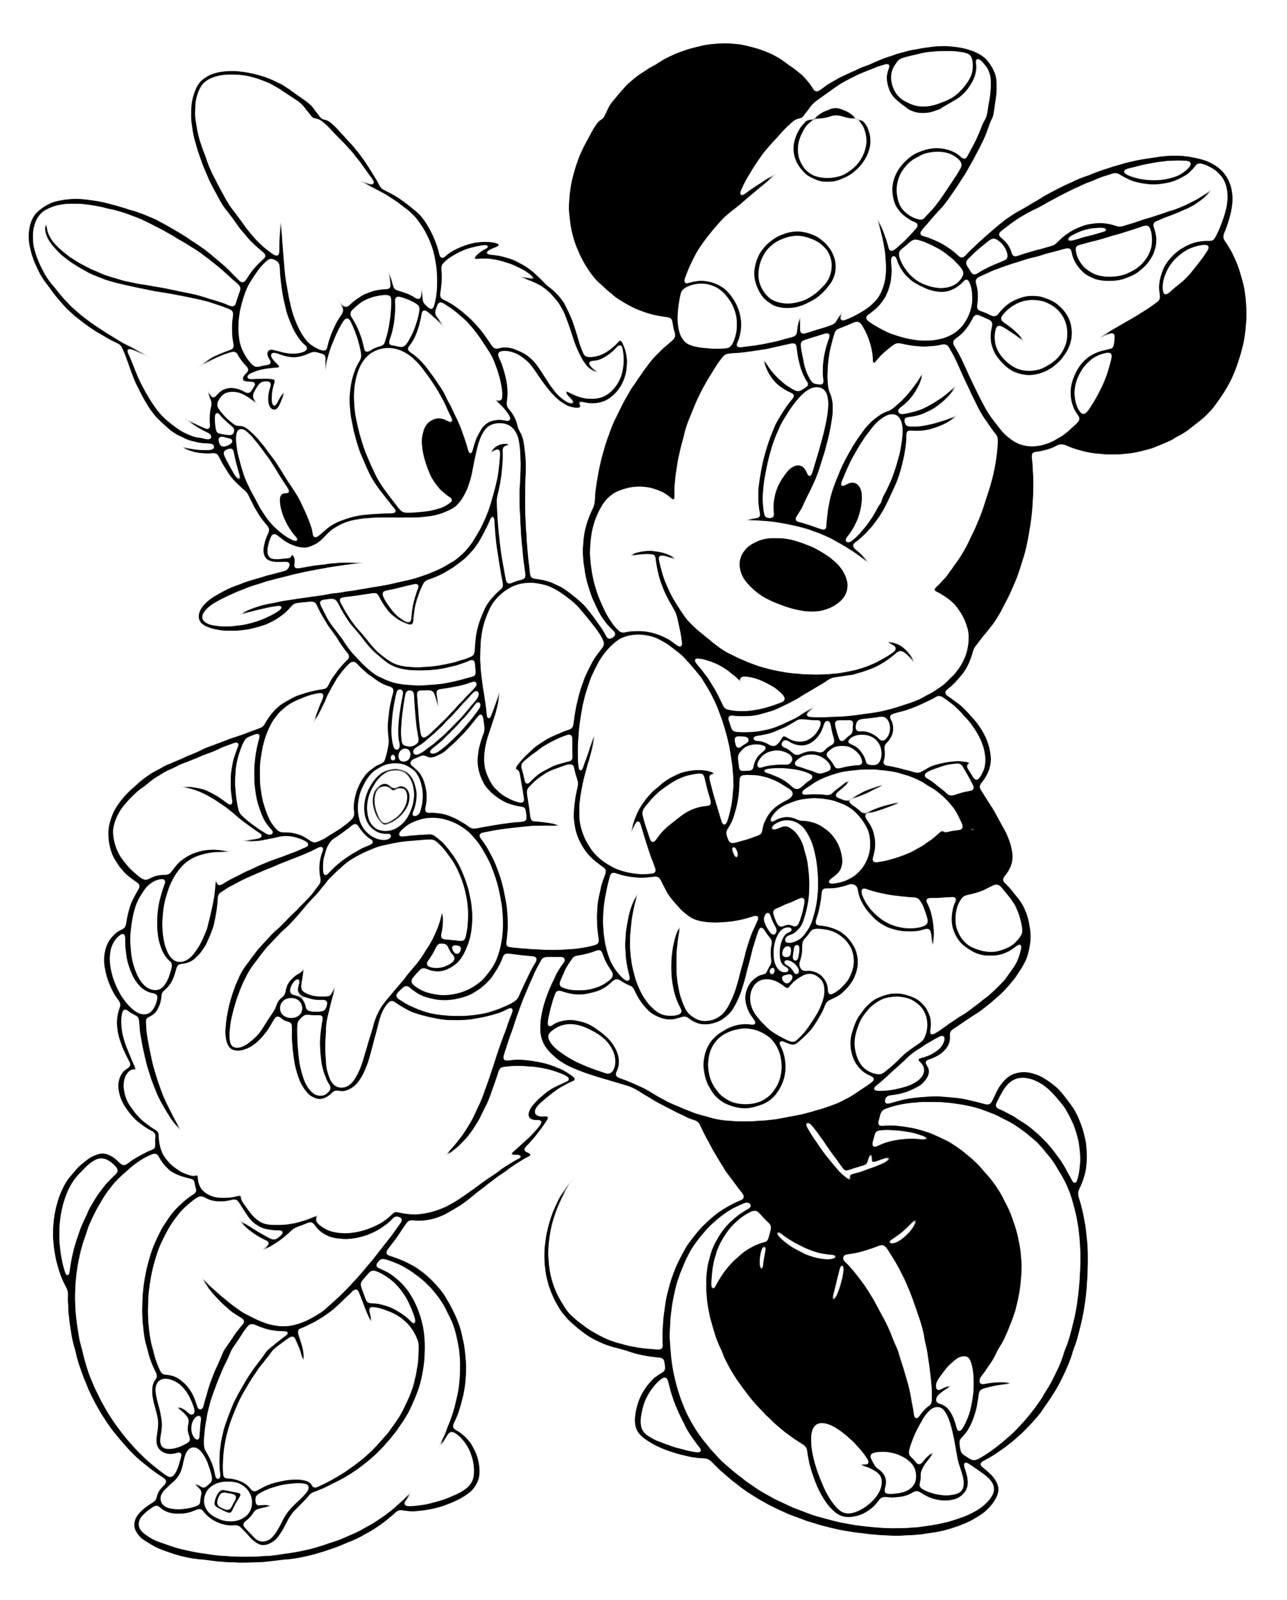 Disney Classici - Minni e Paperina due grandi amiche